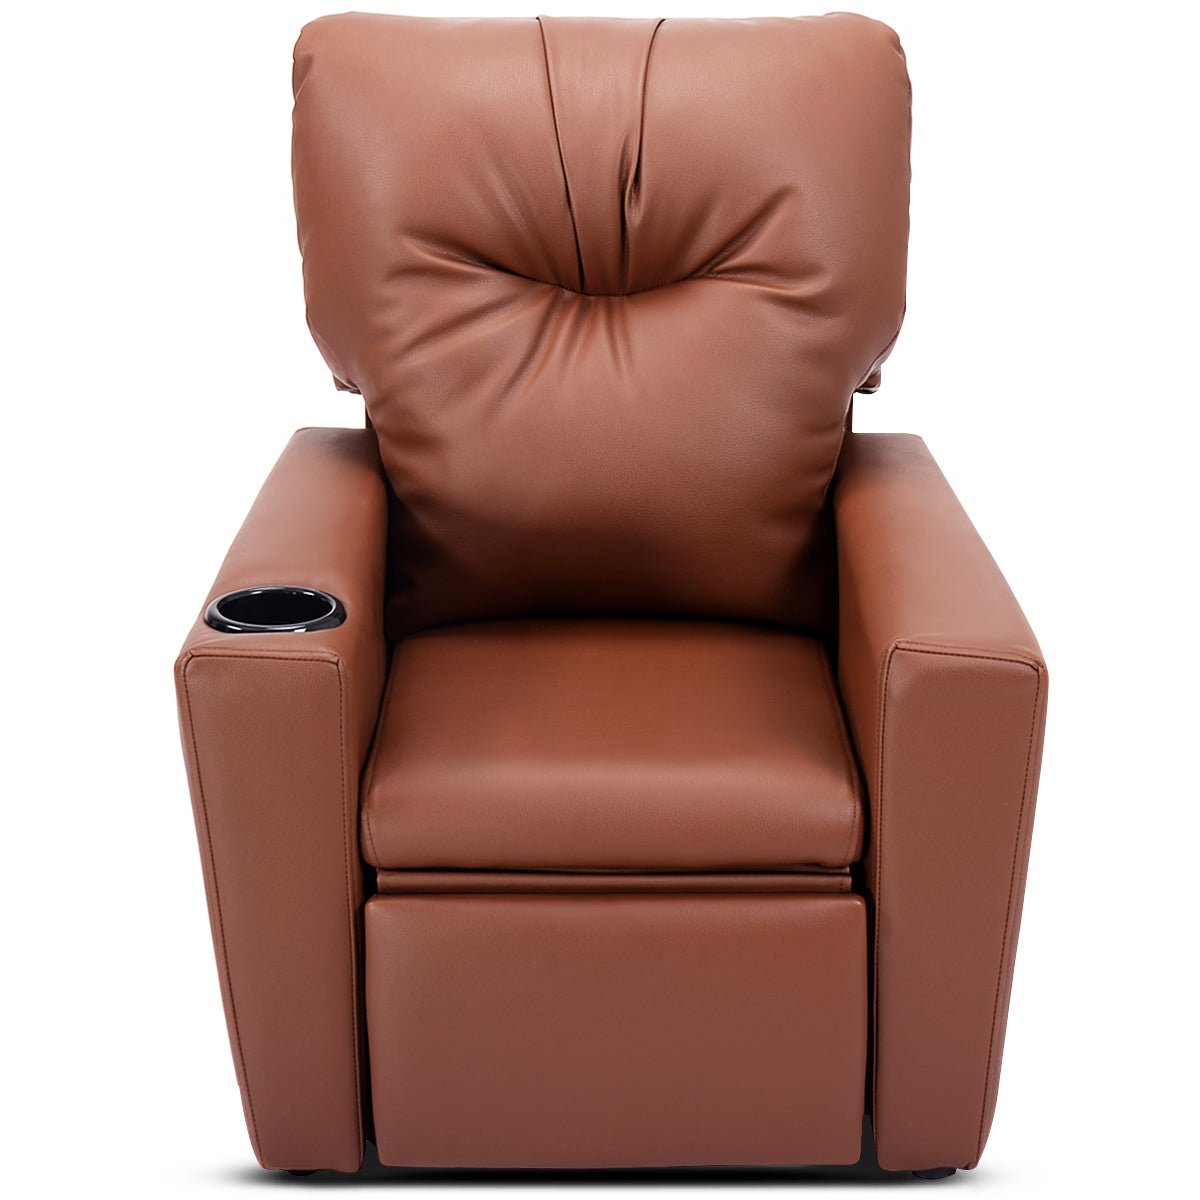 Adjustable Kids Lounge Seat: High Backrest and Armrest - Rich Brown